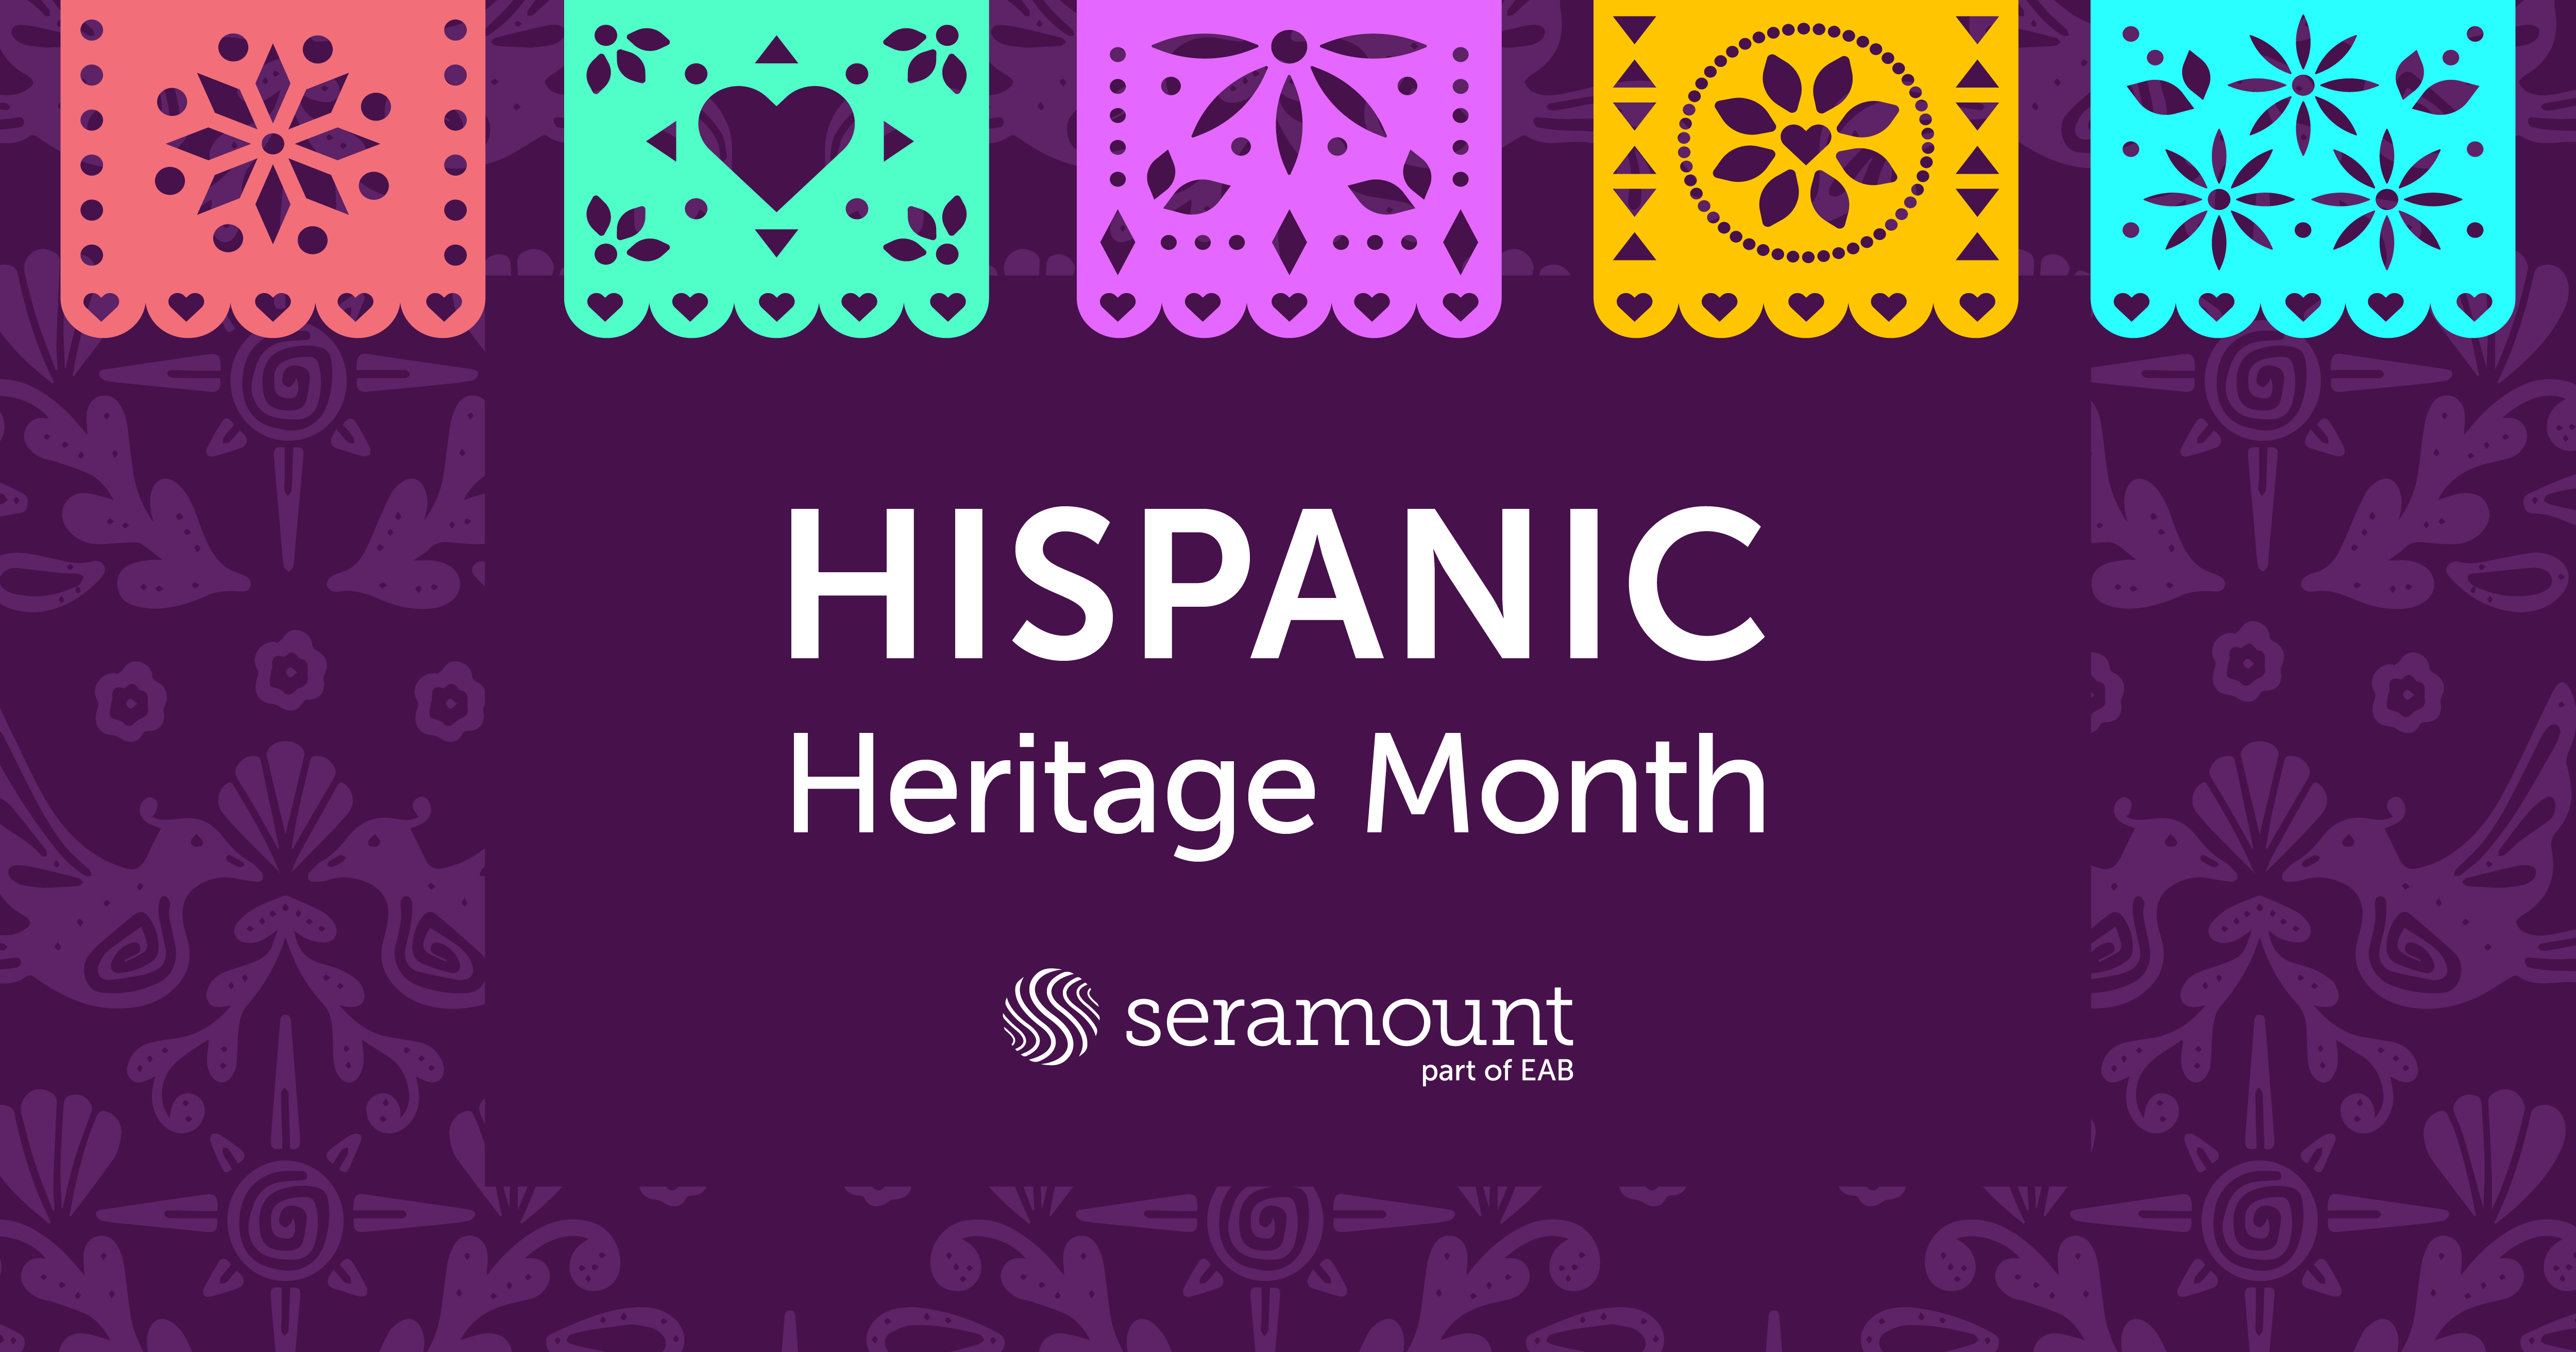 Seramount Hispanic Heritage Month